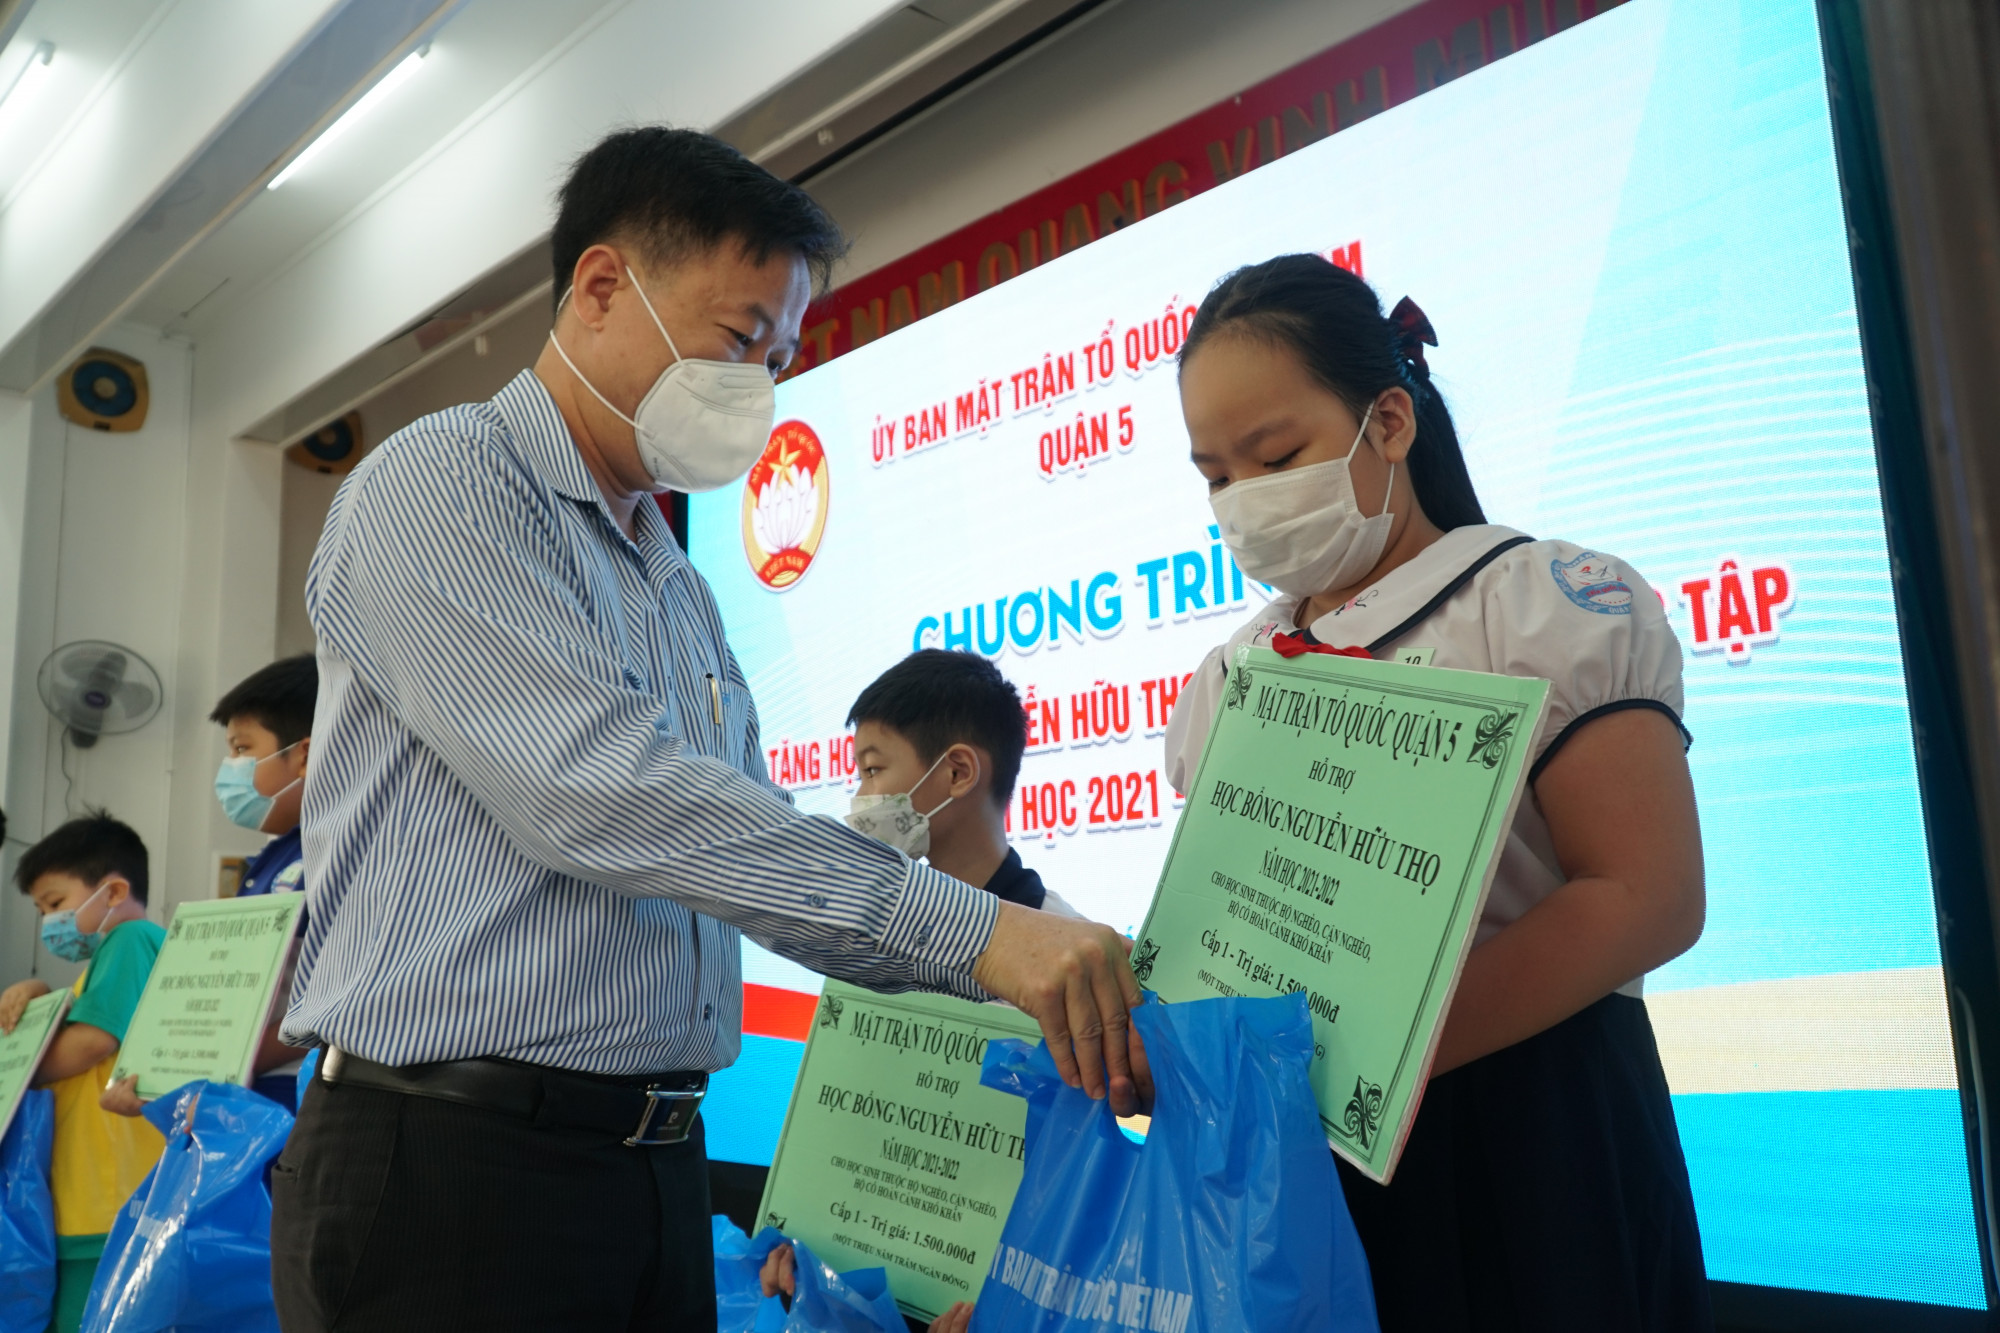 Ông Lê Tấn Tài - Chủ tịch Ủy ban MTTQ Việt Nam quận 5 trao biểu trưng học bổng Nguyễn Hữu Thọ cho học sinh có hoàn cảnh khó khăn những phấn đấu học tập tốt